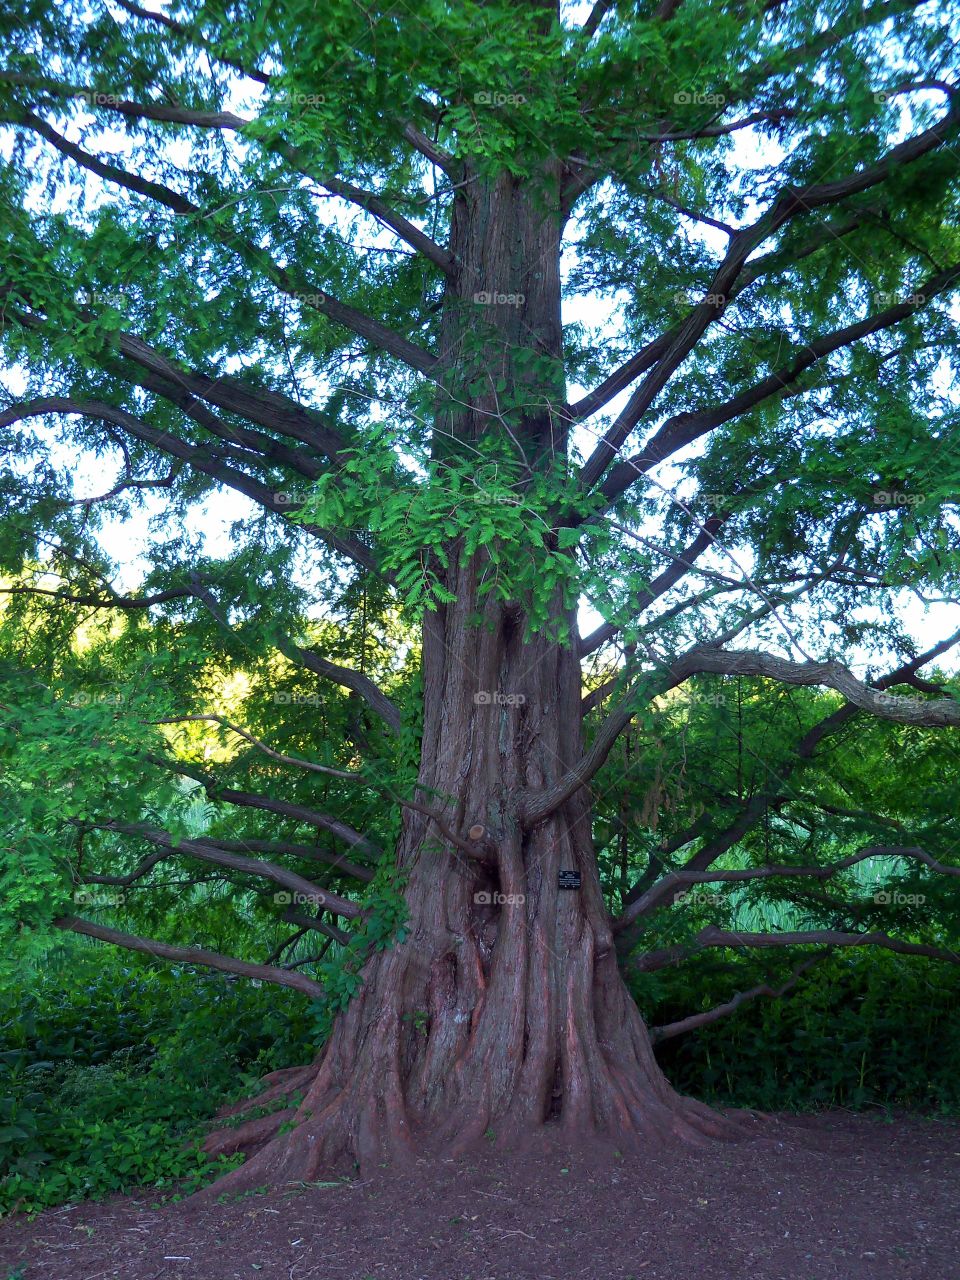 Tree in Arboretum